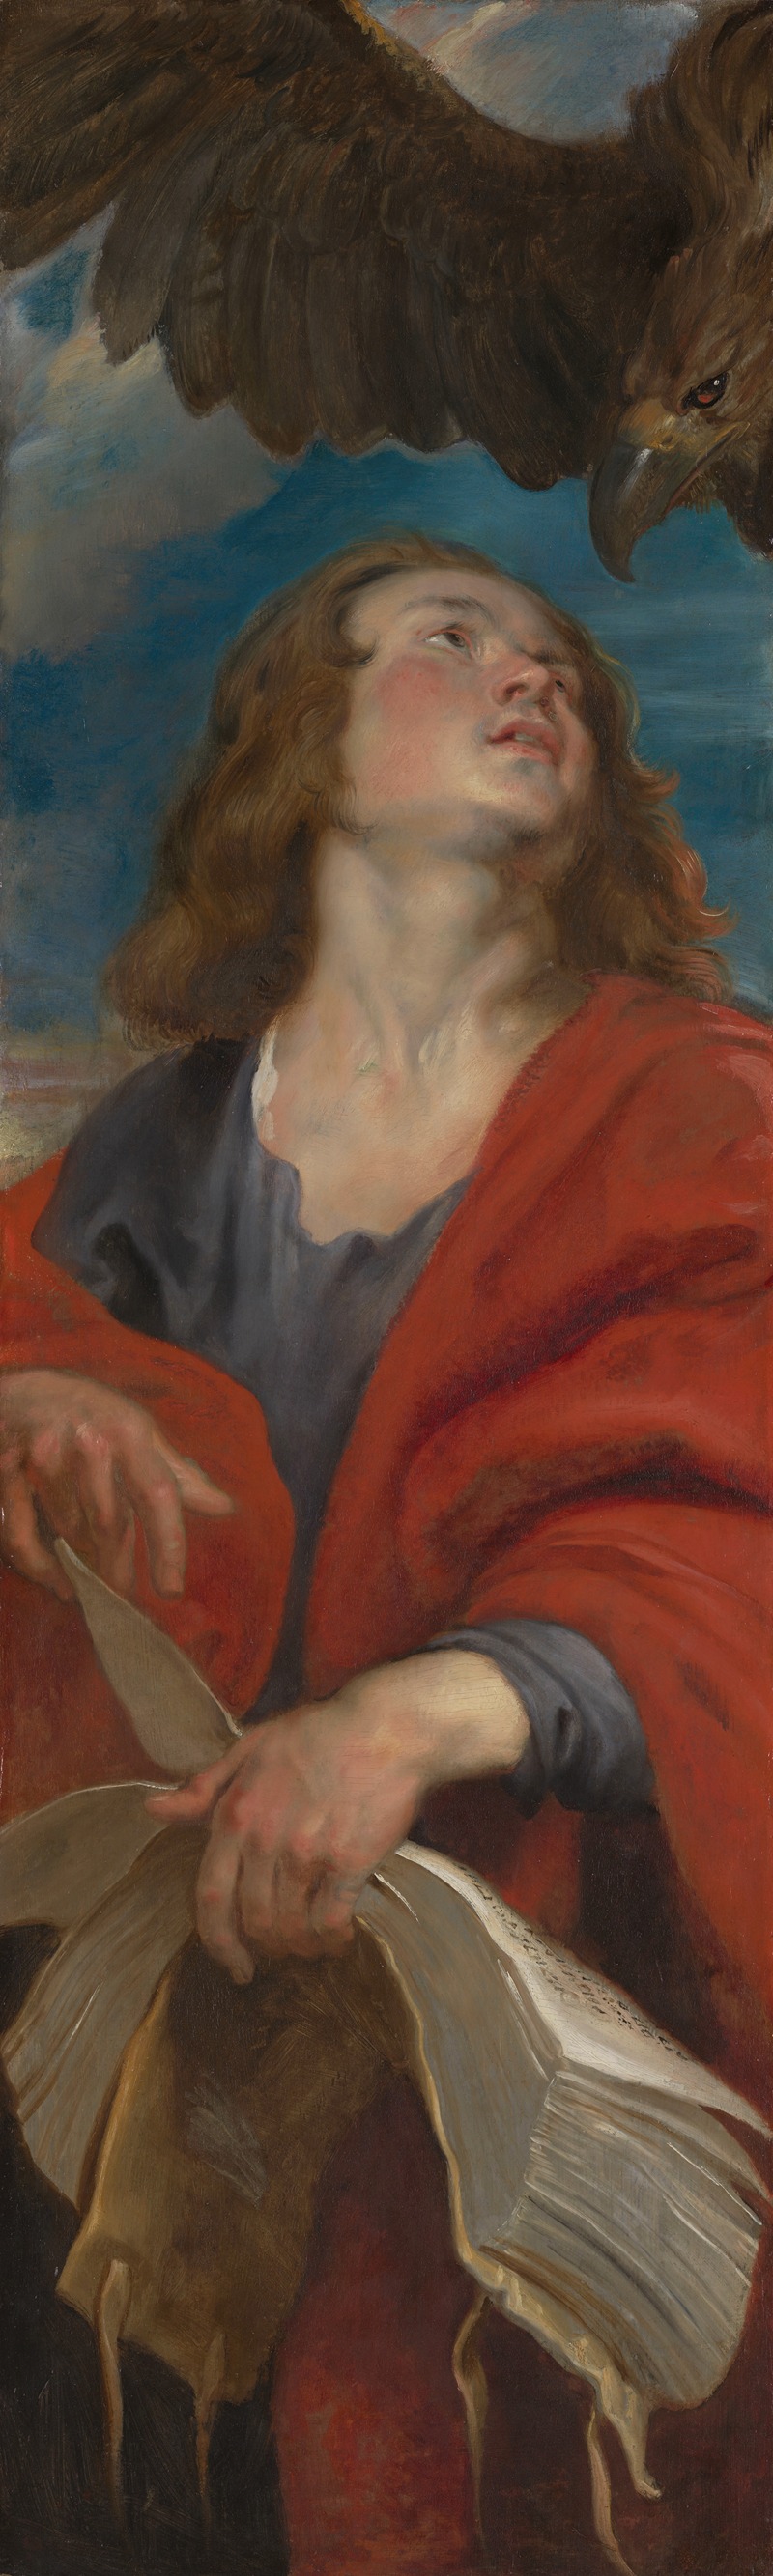 Peter Paul Rubens - Saint John